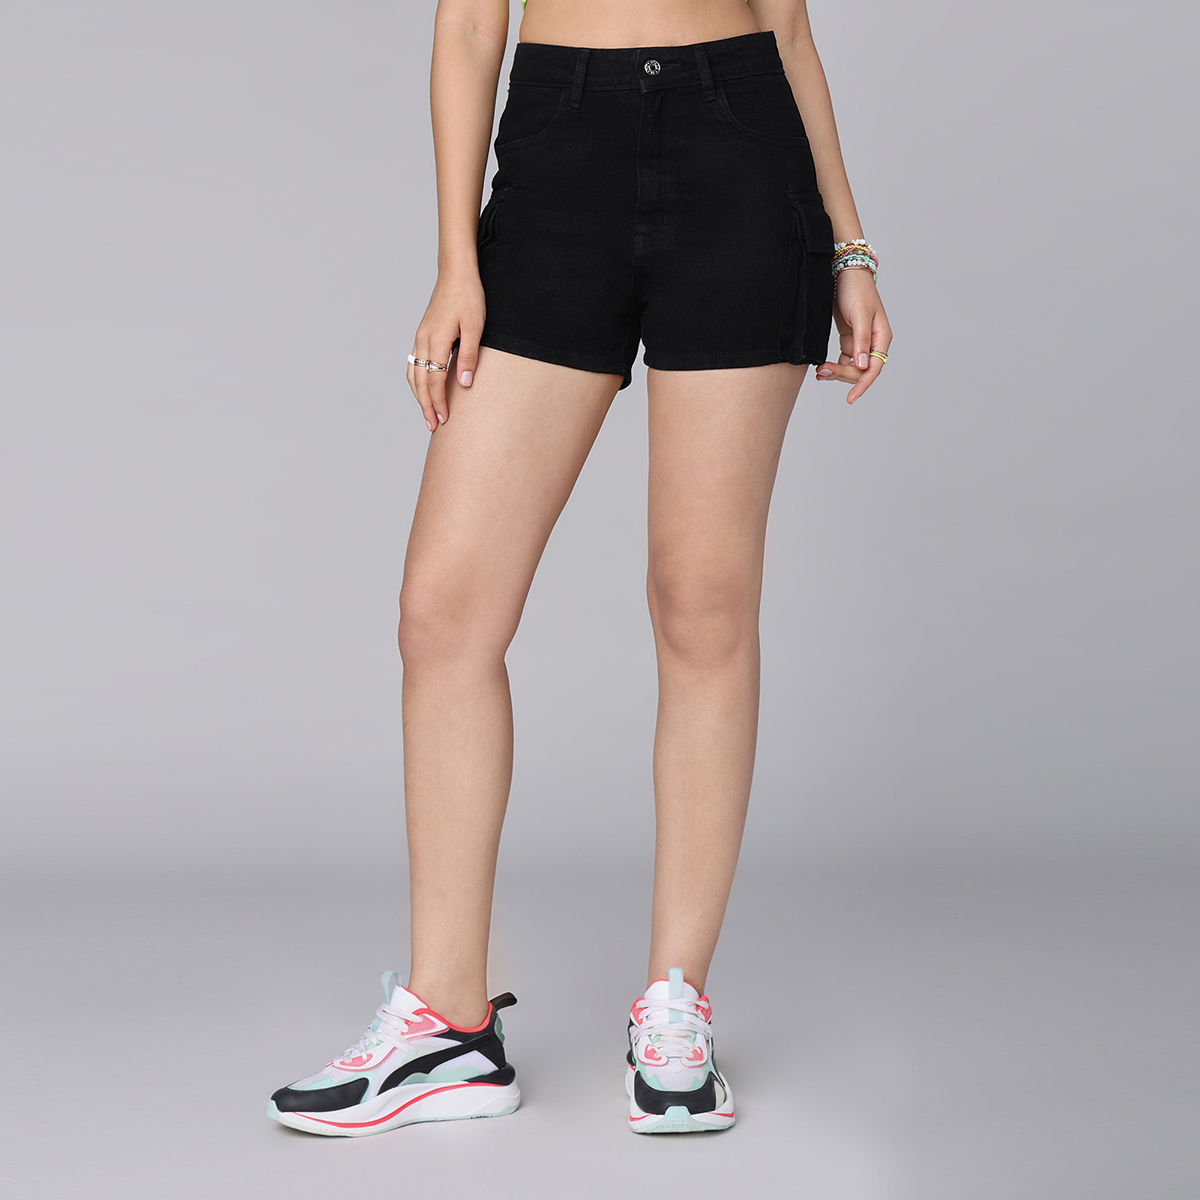 Buy Blue Shorts for Women by BELLISKEY Online | Ajio.com